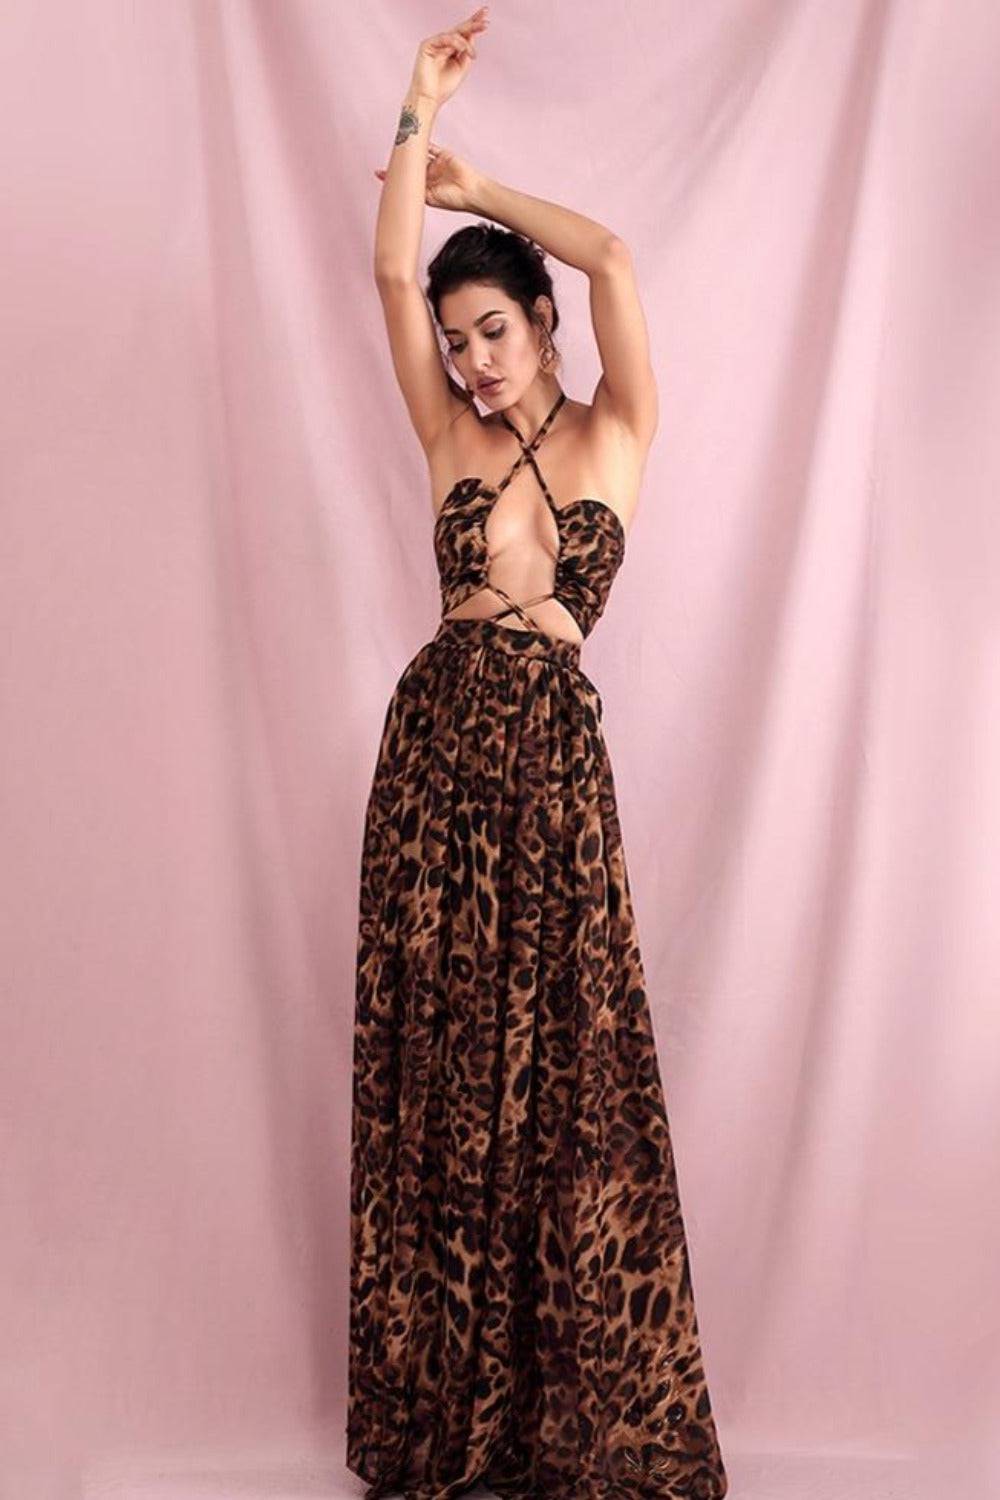 Brown Leopard Cut Out Chiffon Maxi Dress - TGC Boutique - Leopard Dress